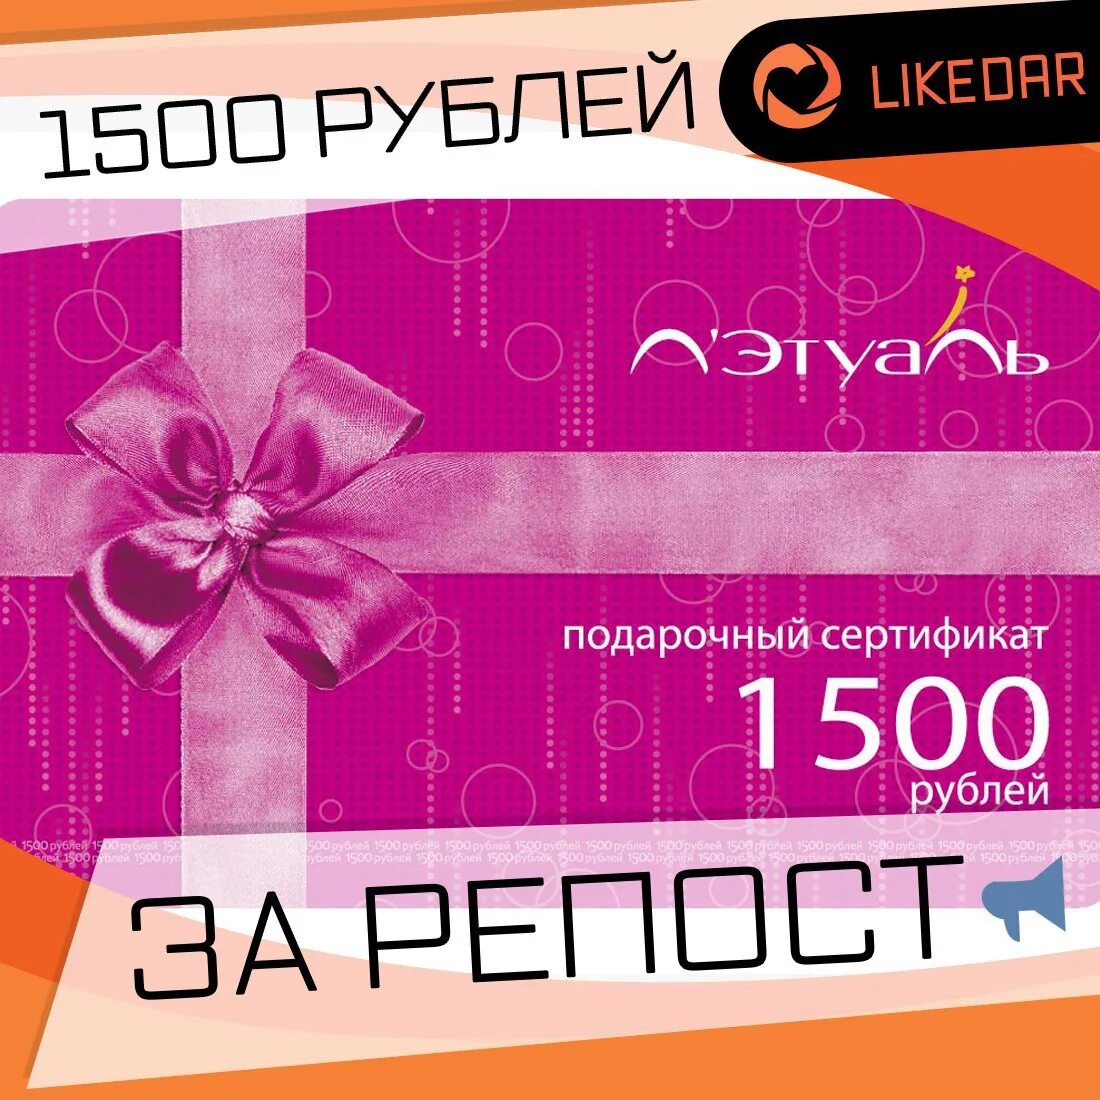 Подарочный сертификат 1500 рублей. Подарочная карта. Этуаль подарочный сертификат. Подарочный сертификат на 1500 руб.